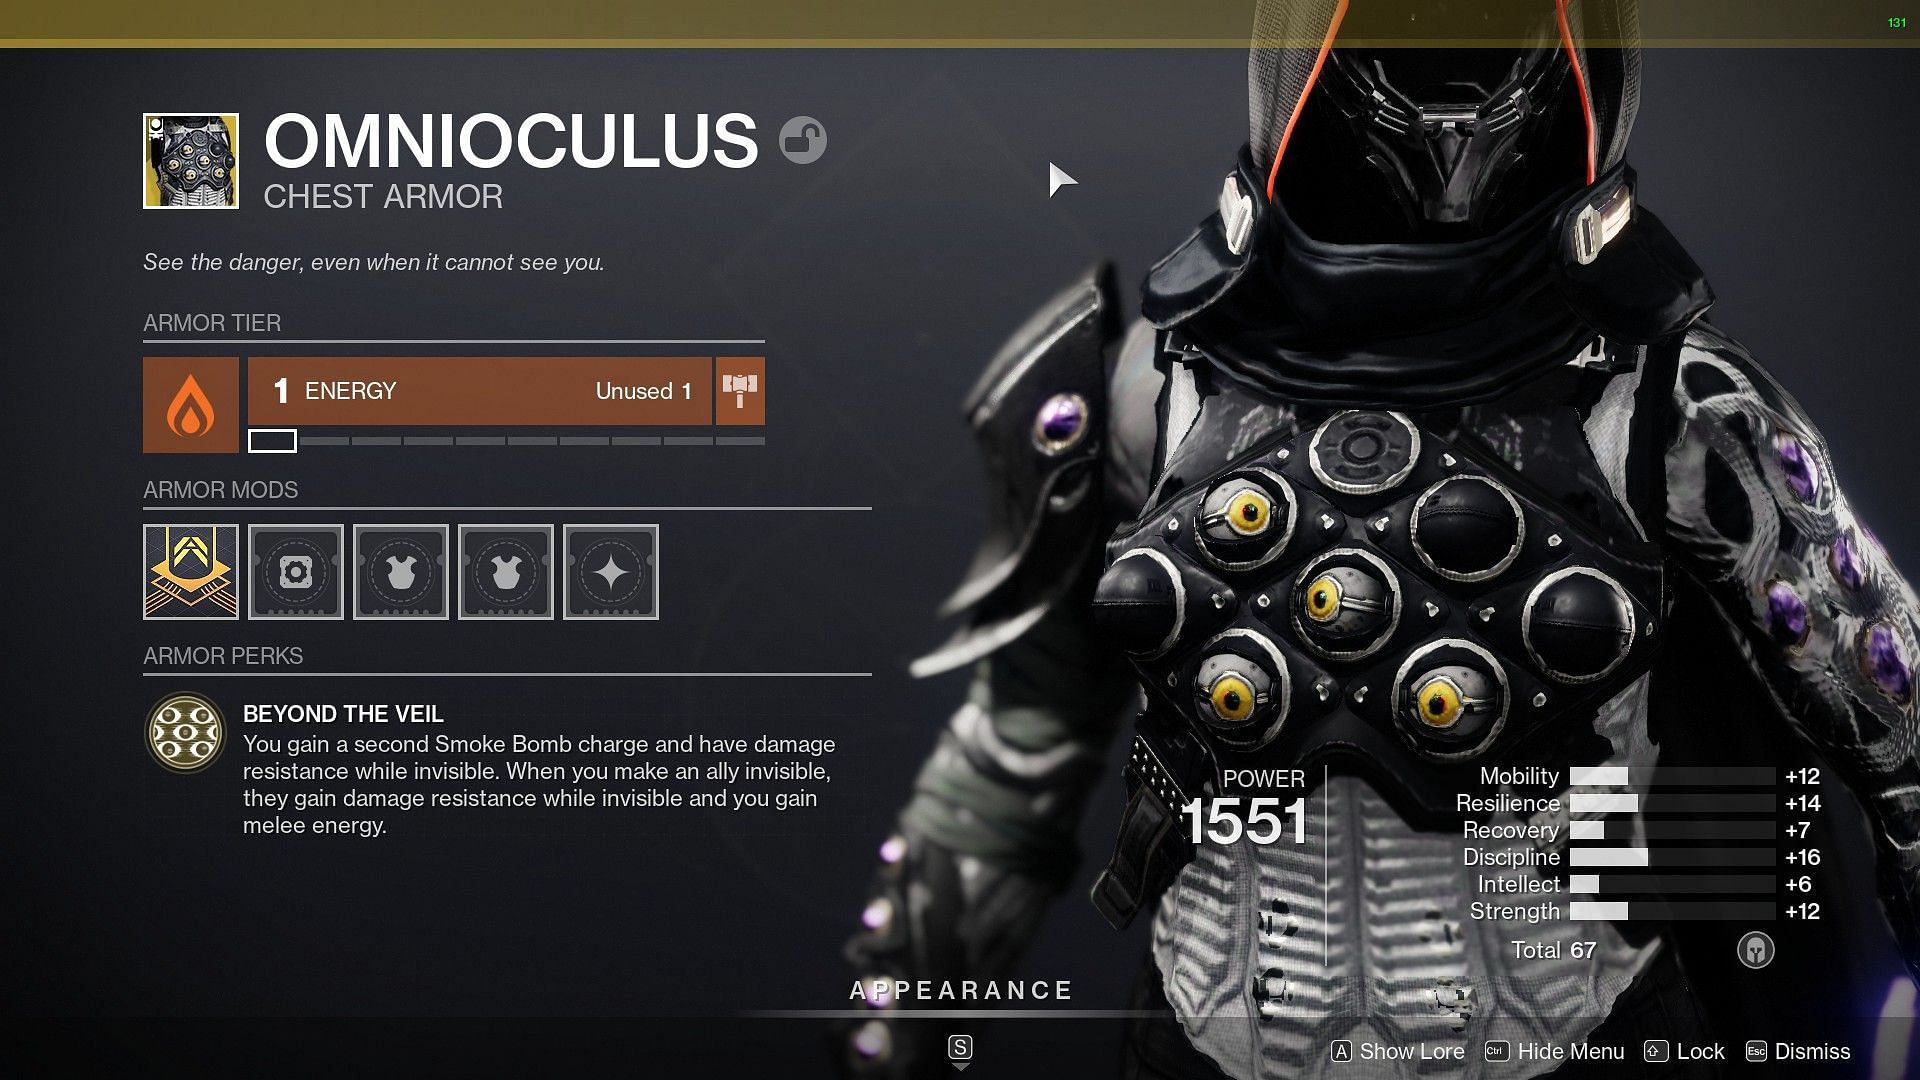 Omnioculus exotic Chest Armor (Image via Bungie)